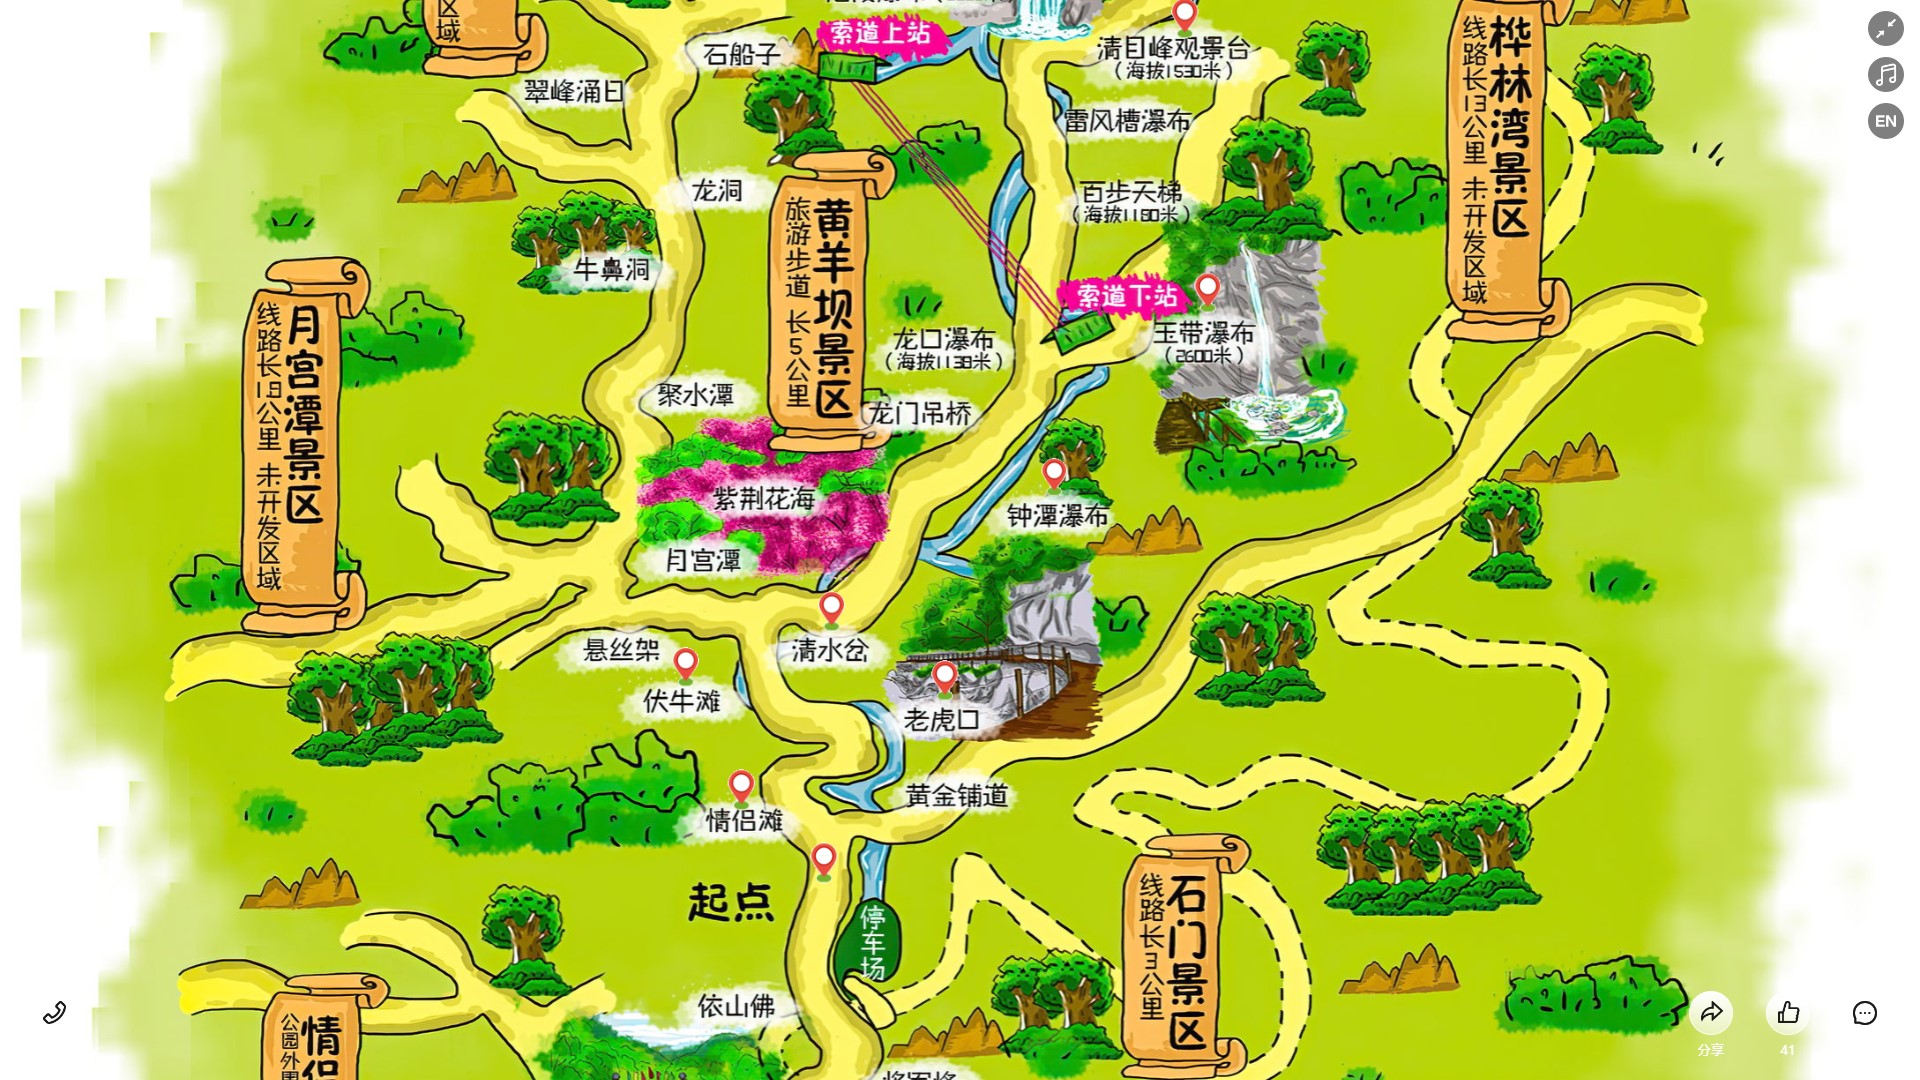 福山景区导览系统